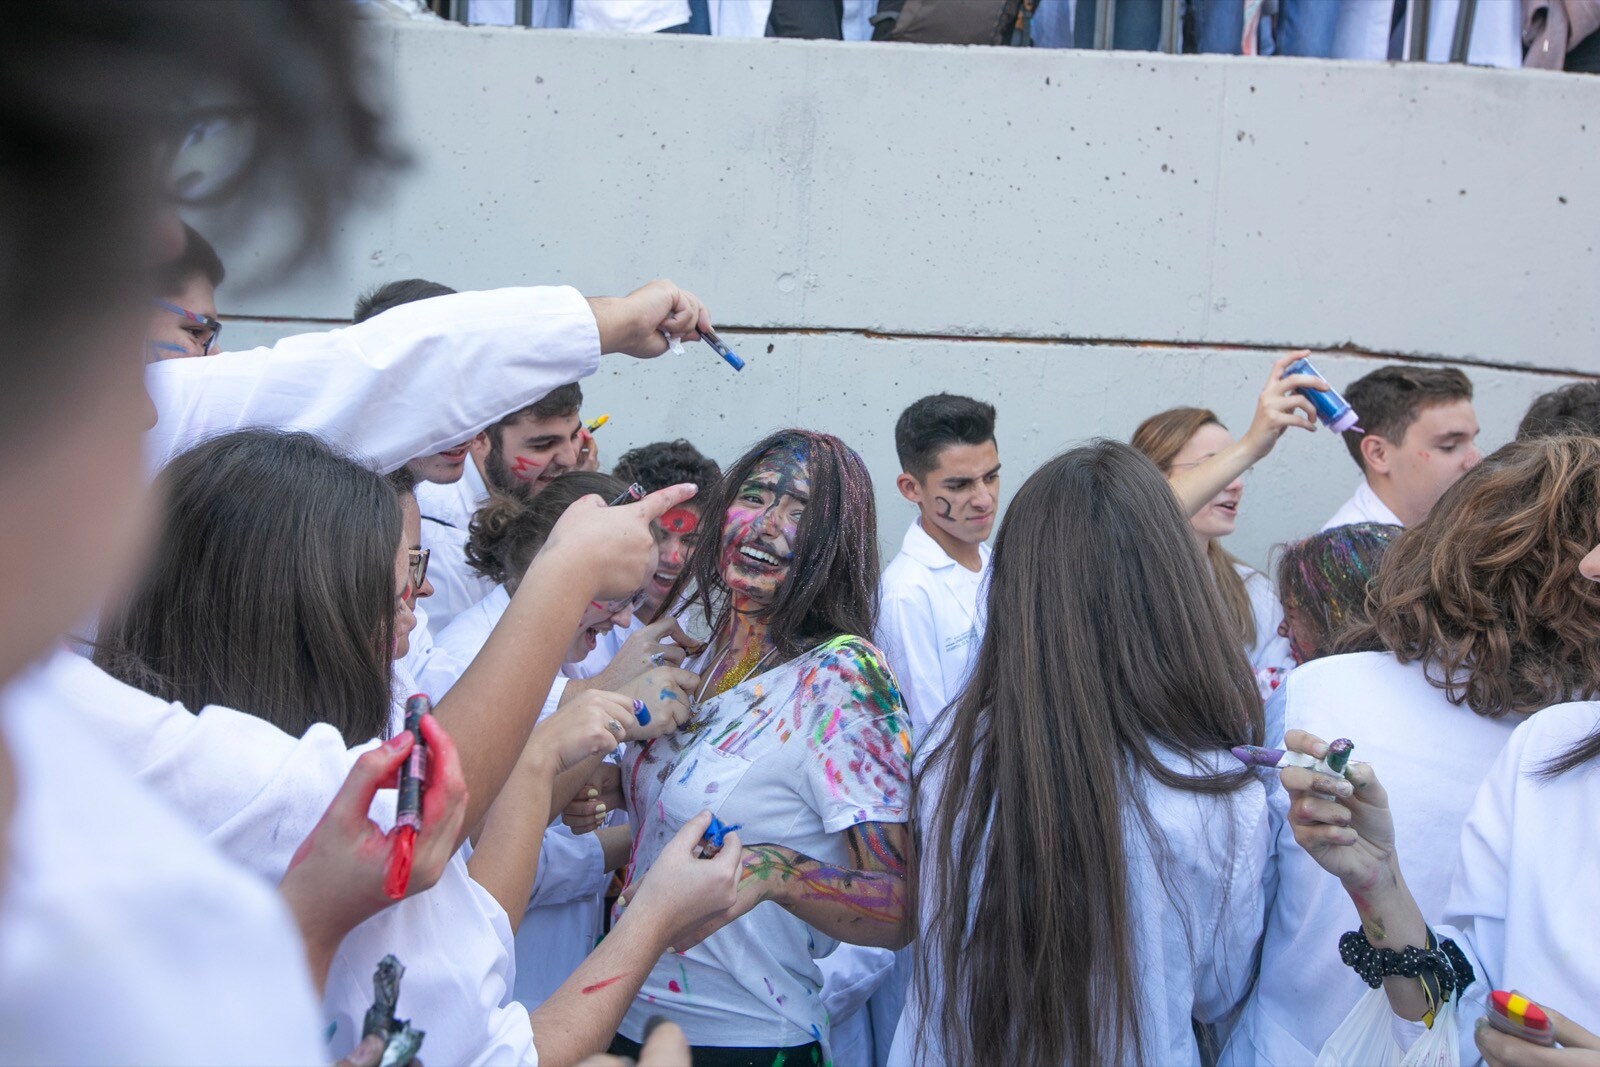 Los estudiantes de Medicina celebran de esta manera uno de sus días grandes